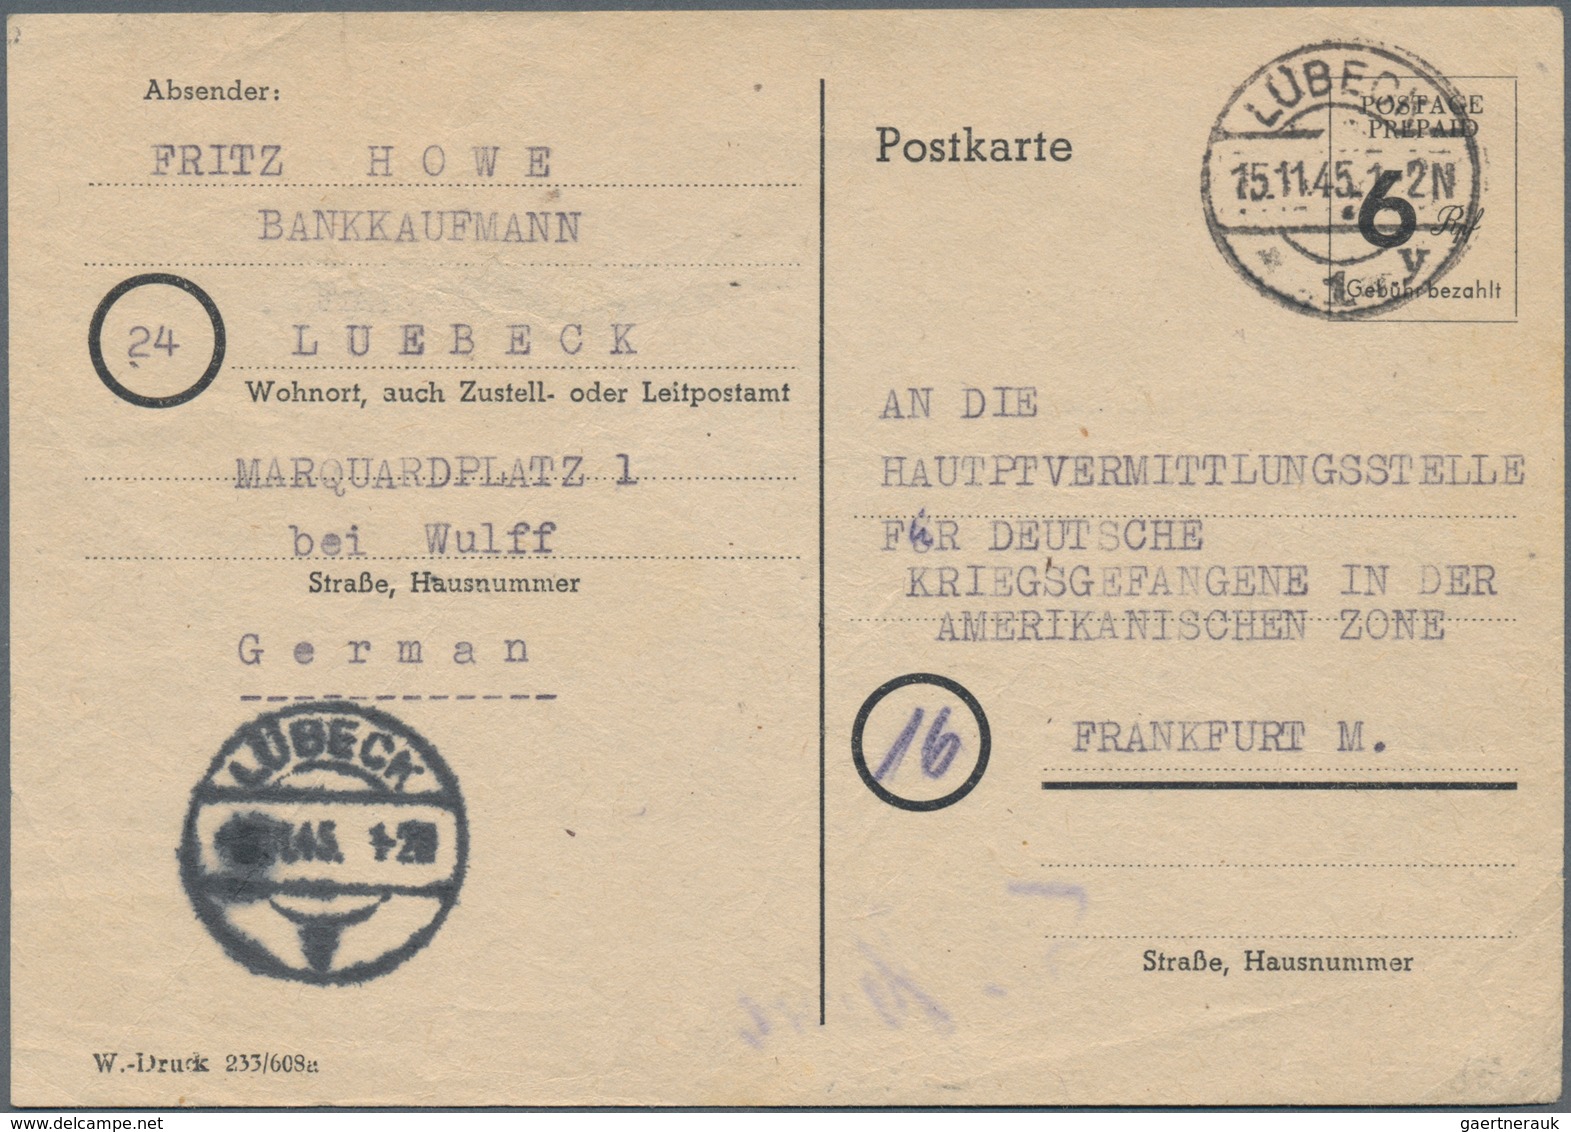 Deutschland nach 1945: 1945/1950, Posten von 1.000/1.5000 meist ungebrauchten Ganzsachenkarten, dabe